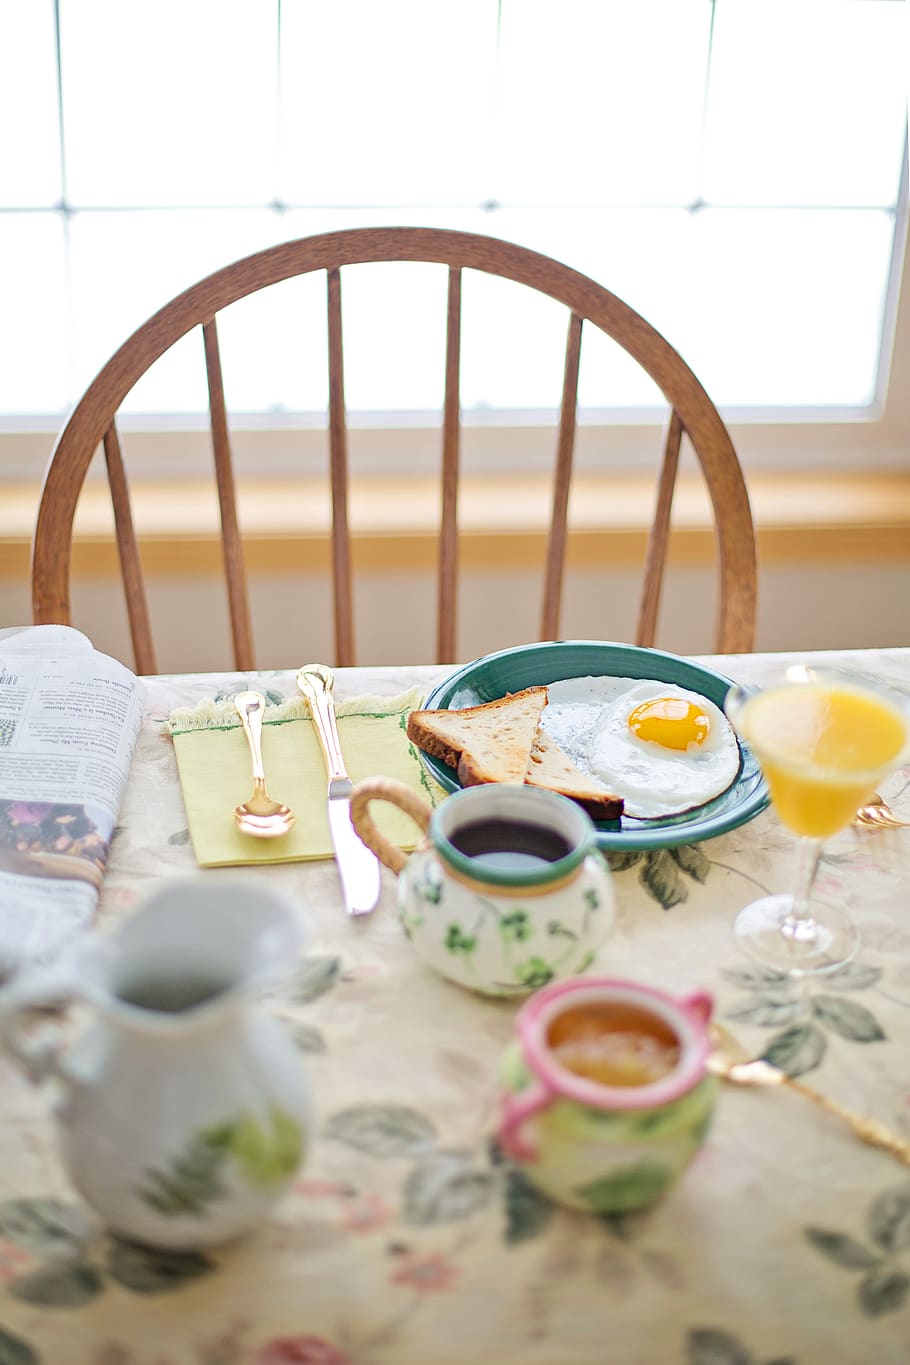 завтрак, жареное яйцо, кофе, Таблица, сервировка стола, еда, утро, здоровый, белок, поздний завтрак